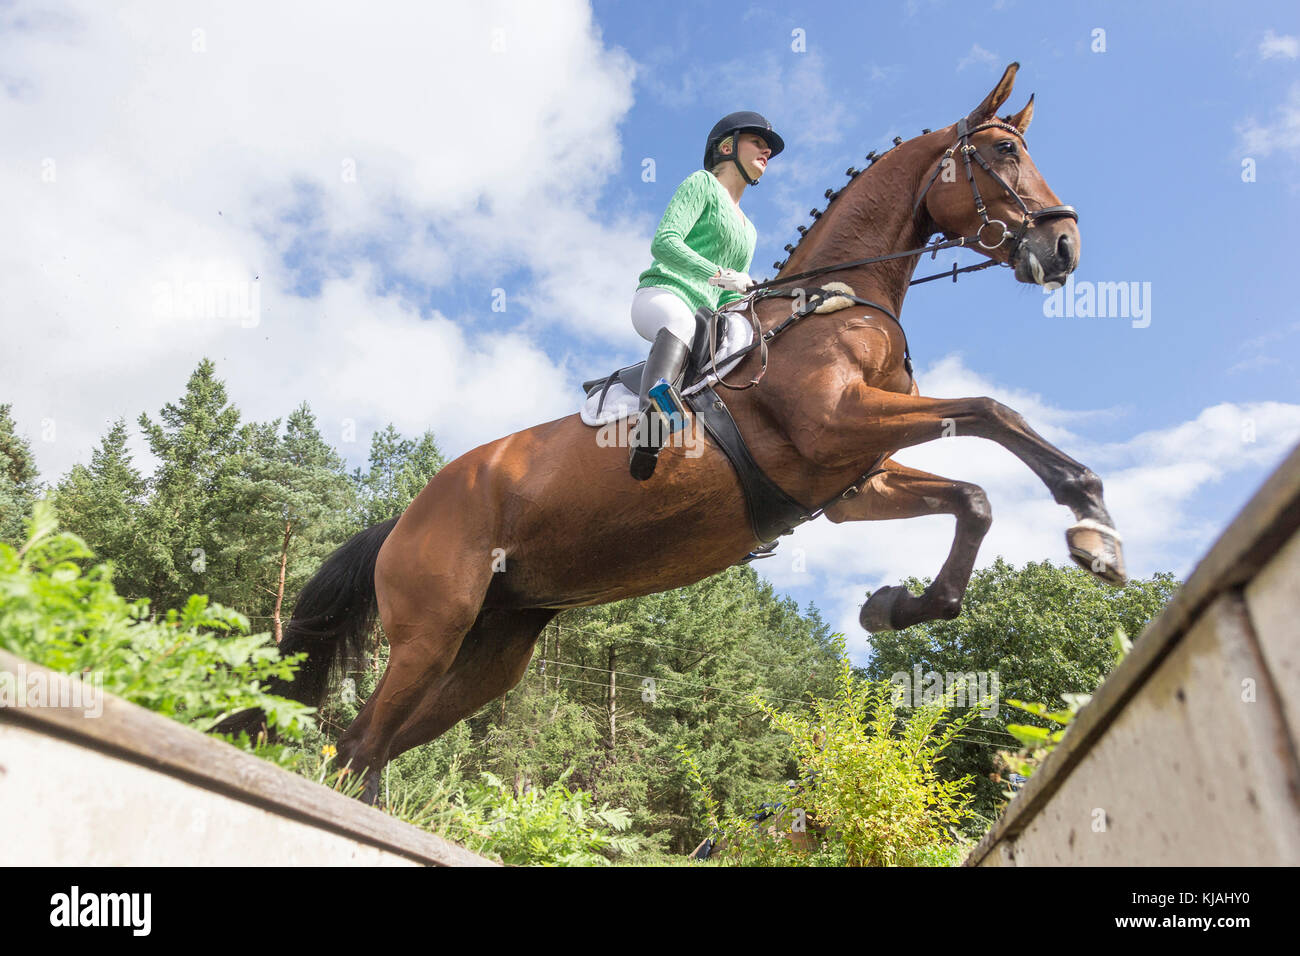 Cheval de Hanovre. Effacement d'un rider obstacle pendant un cross-country ride, vue du dessous. Allemagne Banque D'Images